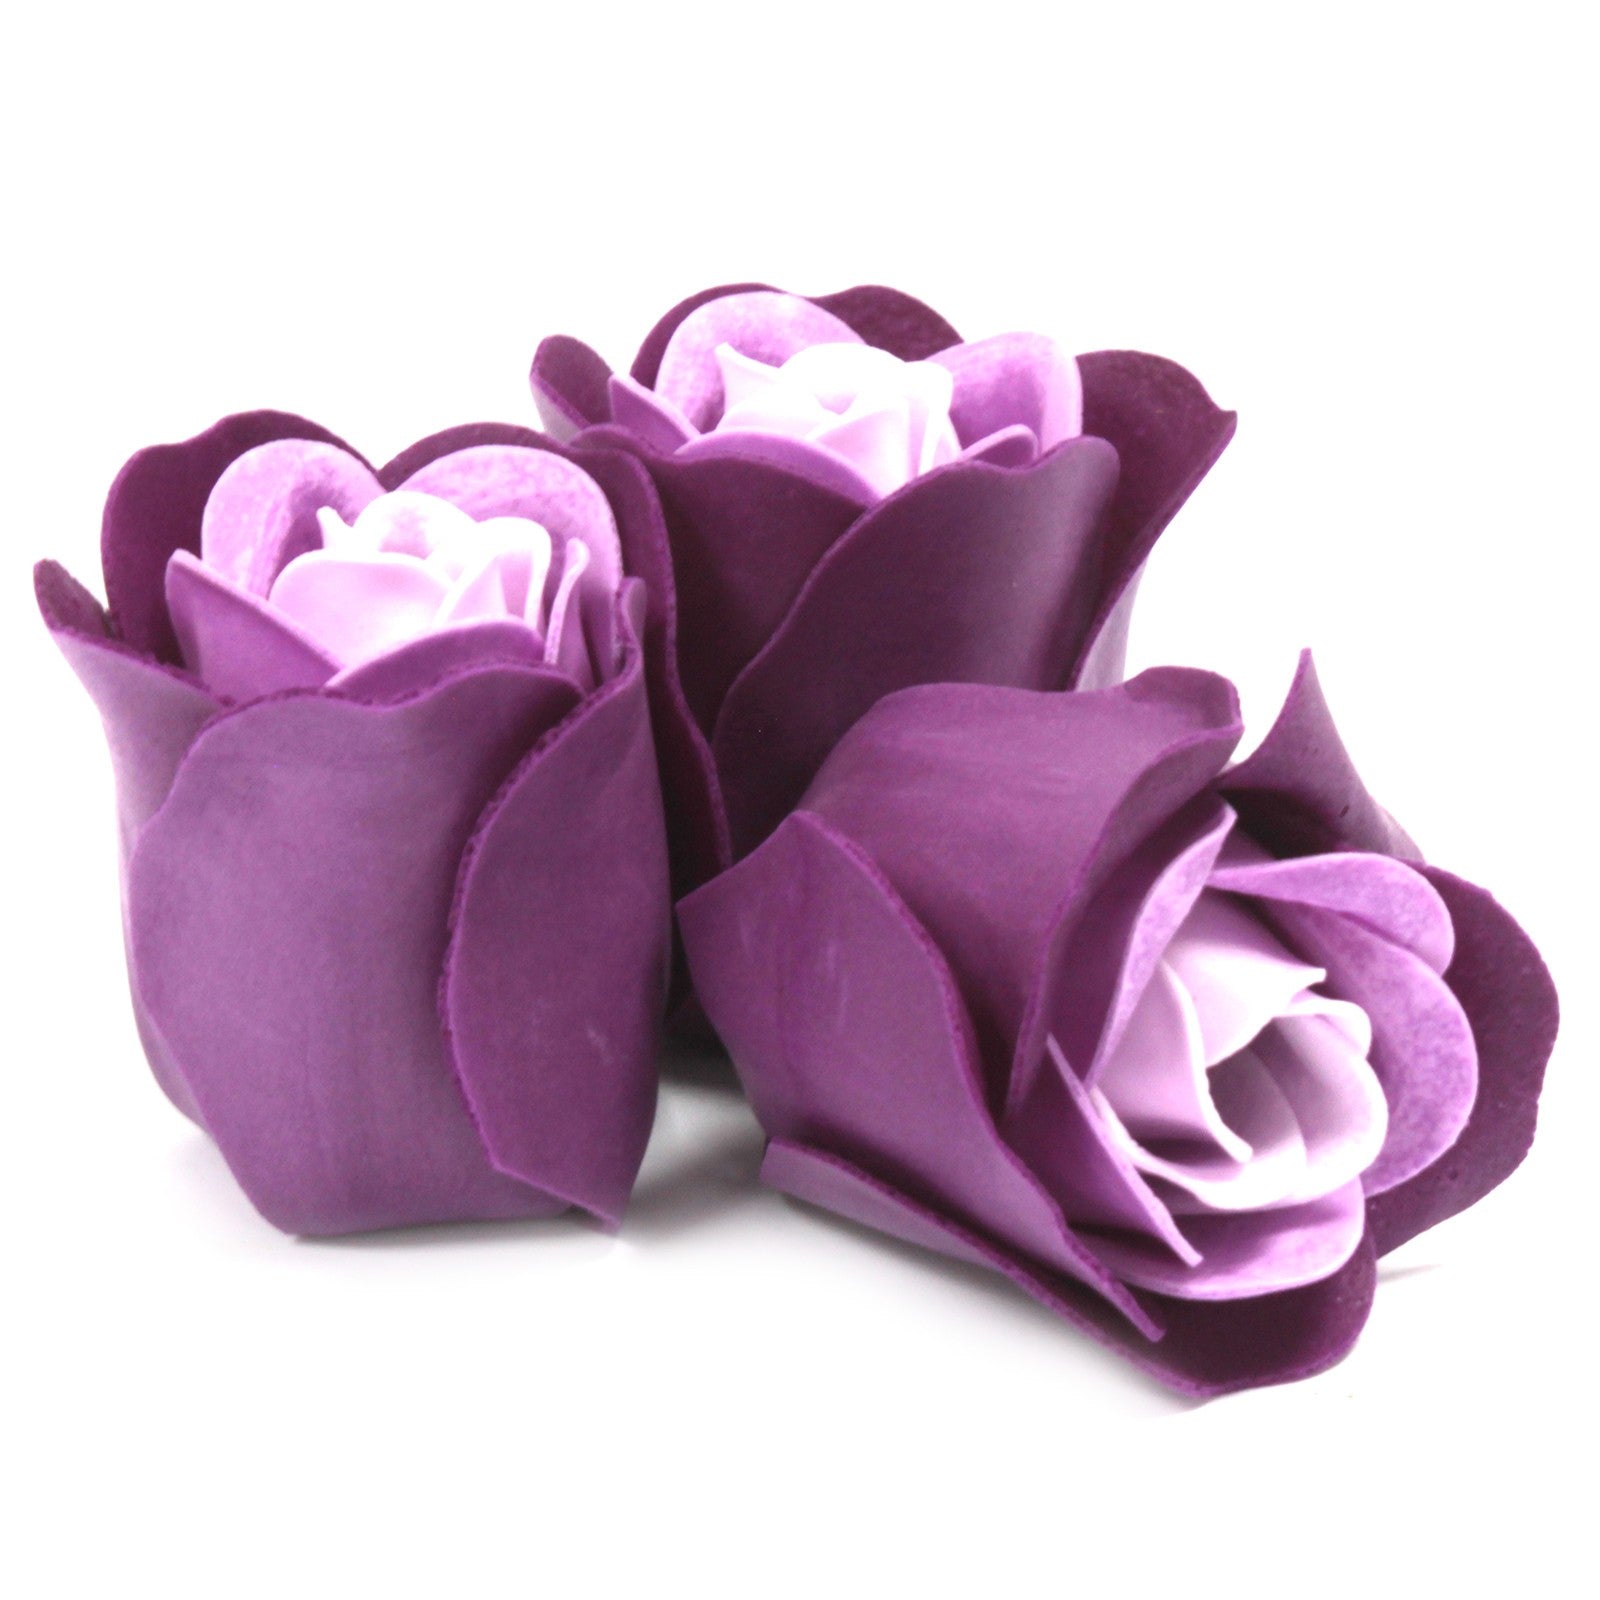 Soap Flower Heart Box - 3 Lavender Roses